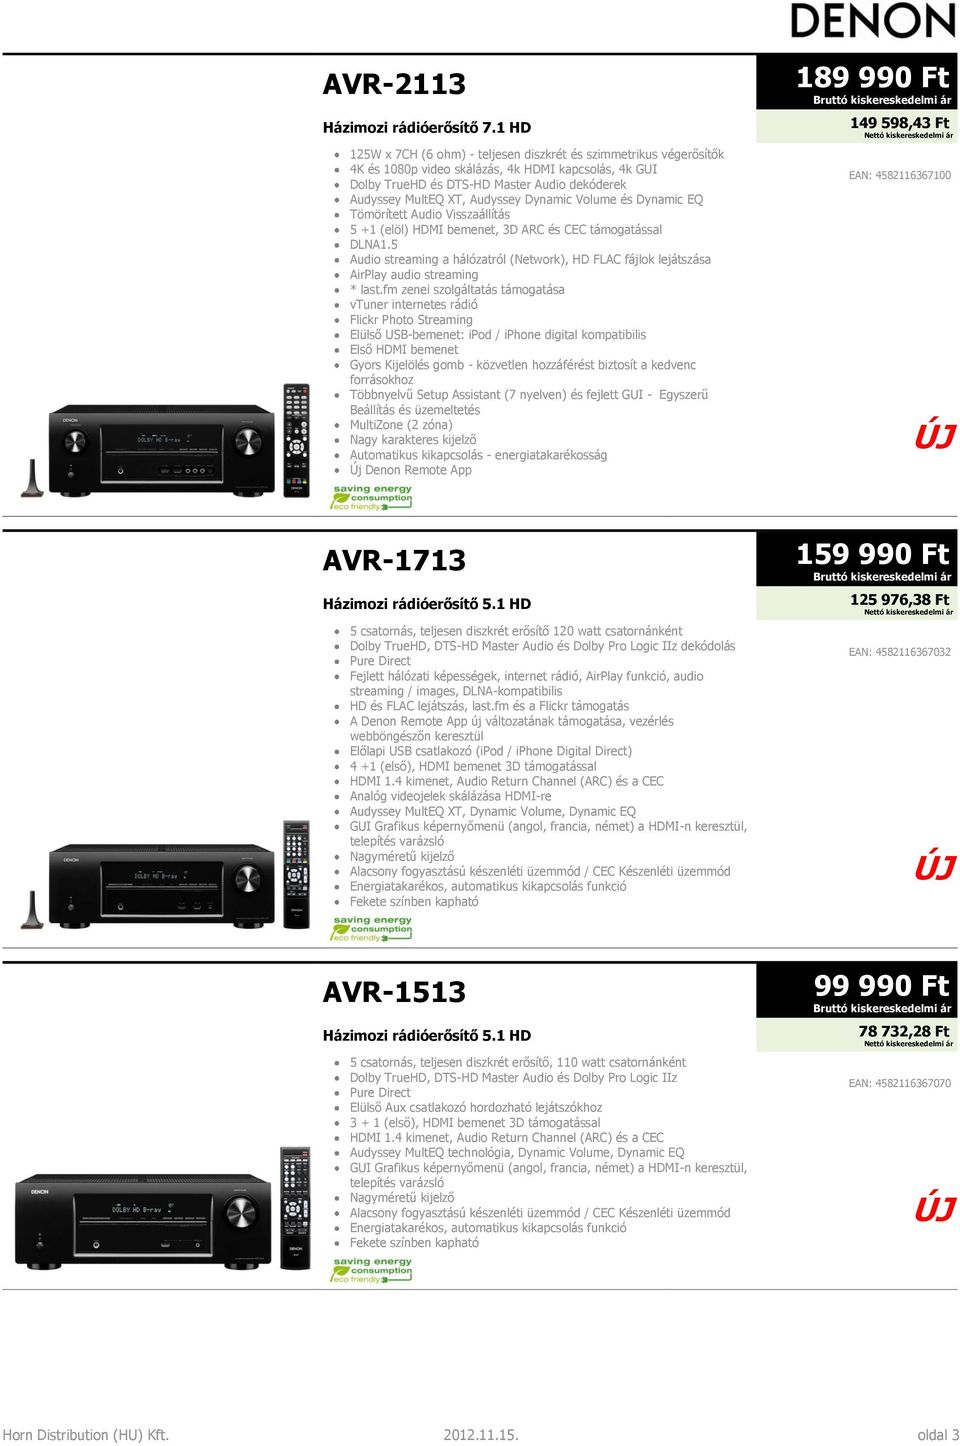 Audyssey Dynamic Volume és Dynamic EQ Tömörített Audio Visszaállítás 5 +1 (elöl) HDMI bemenet, 3D ARC és CEC támogatással DLNA1.